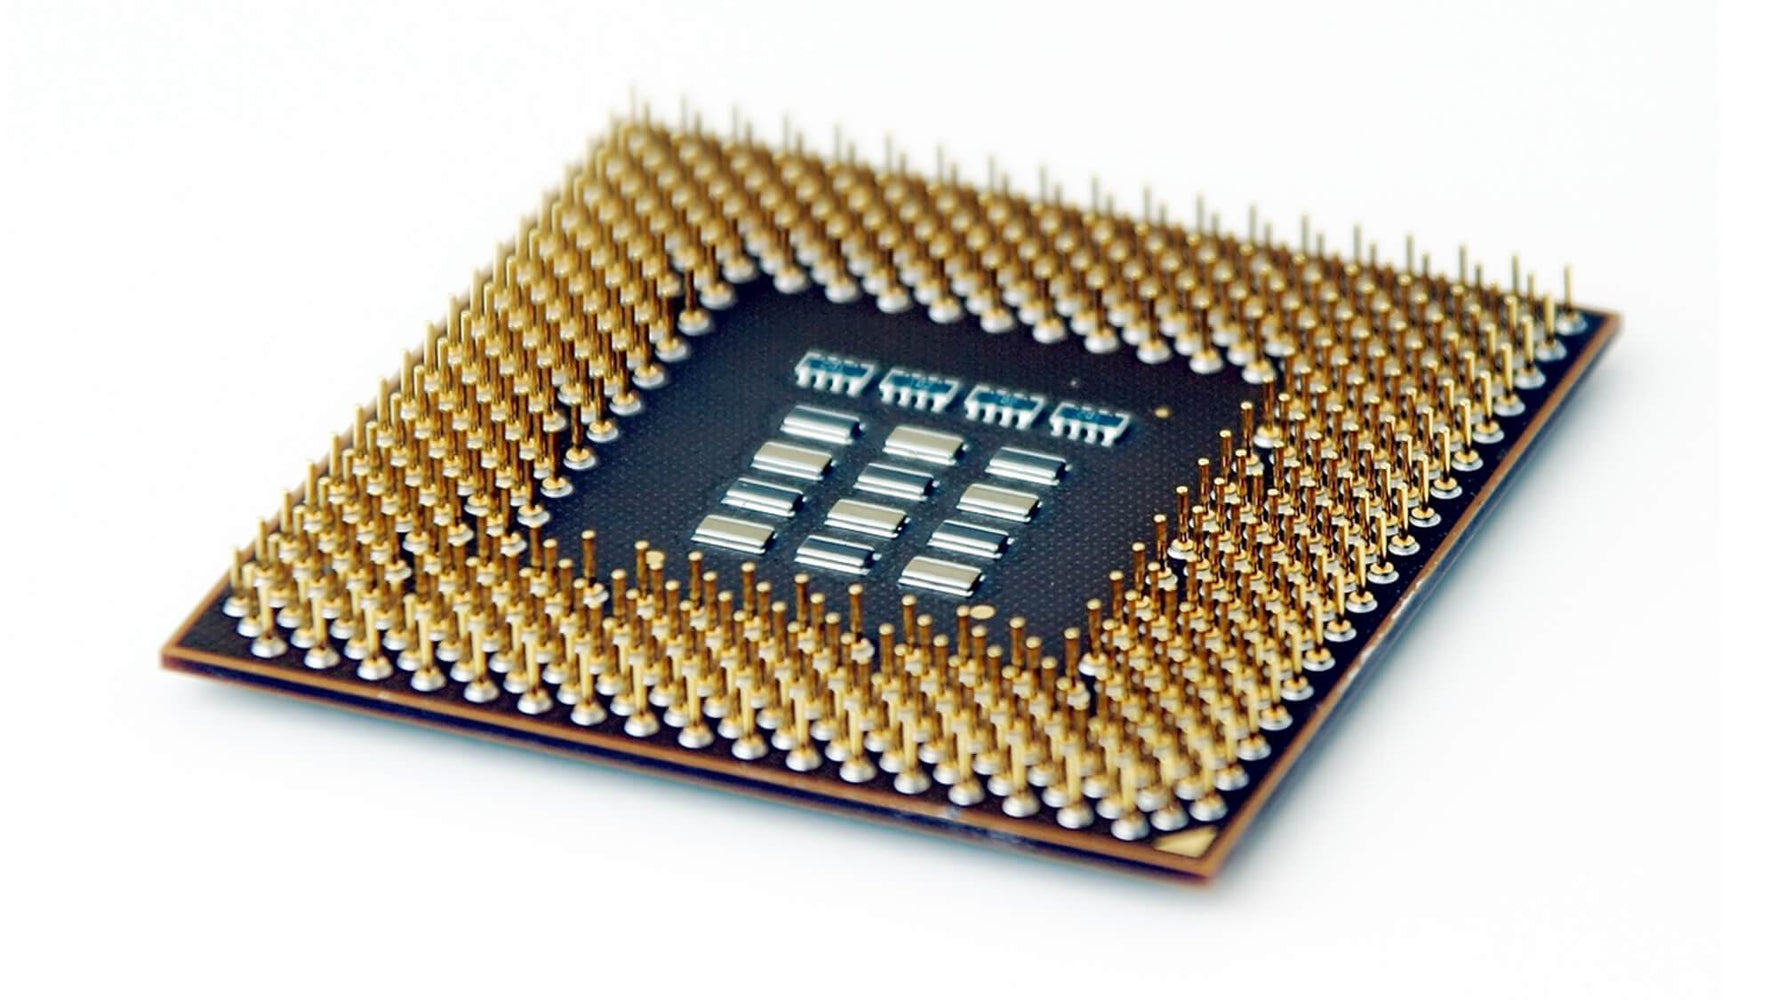 WH150AV - HP 2.60GHz 5GT/s DMI 3MB SmartCache Socket FCBGA1023 / FCPGA988 Intel Core i5-3320M 2-Core Processor